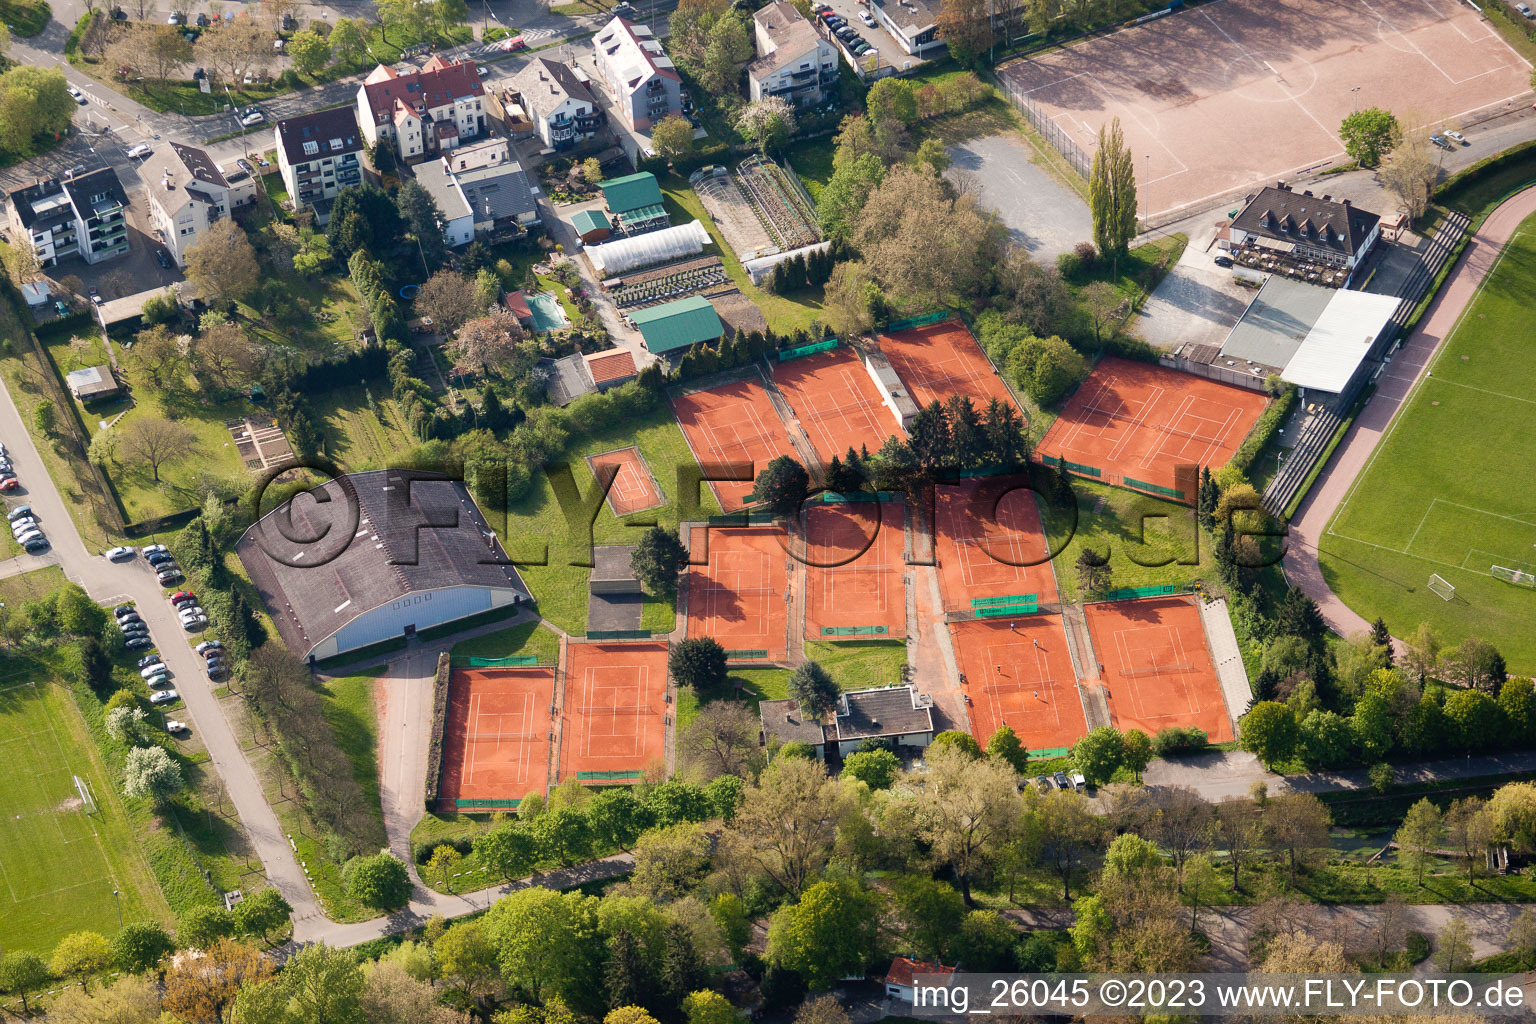 Vue aérienne de Club de tennis au stade Turmberg à le quartier Durlach in Karlsruhe dans le département Bade-Wurtemberg, Allemagne